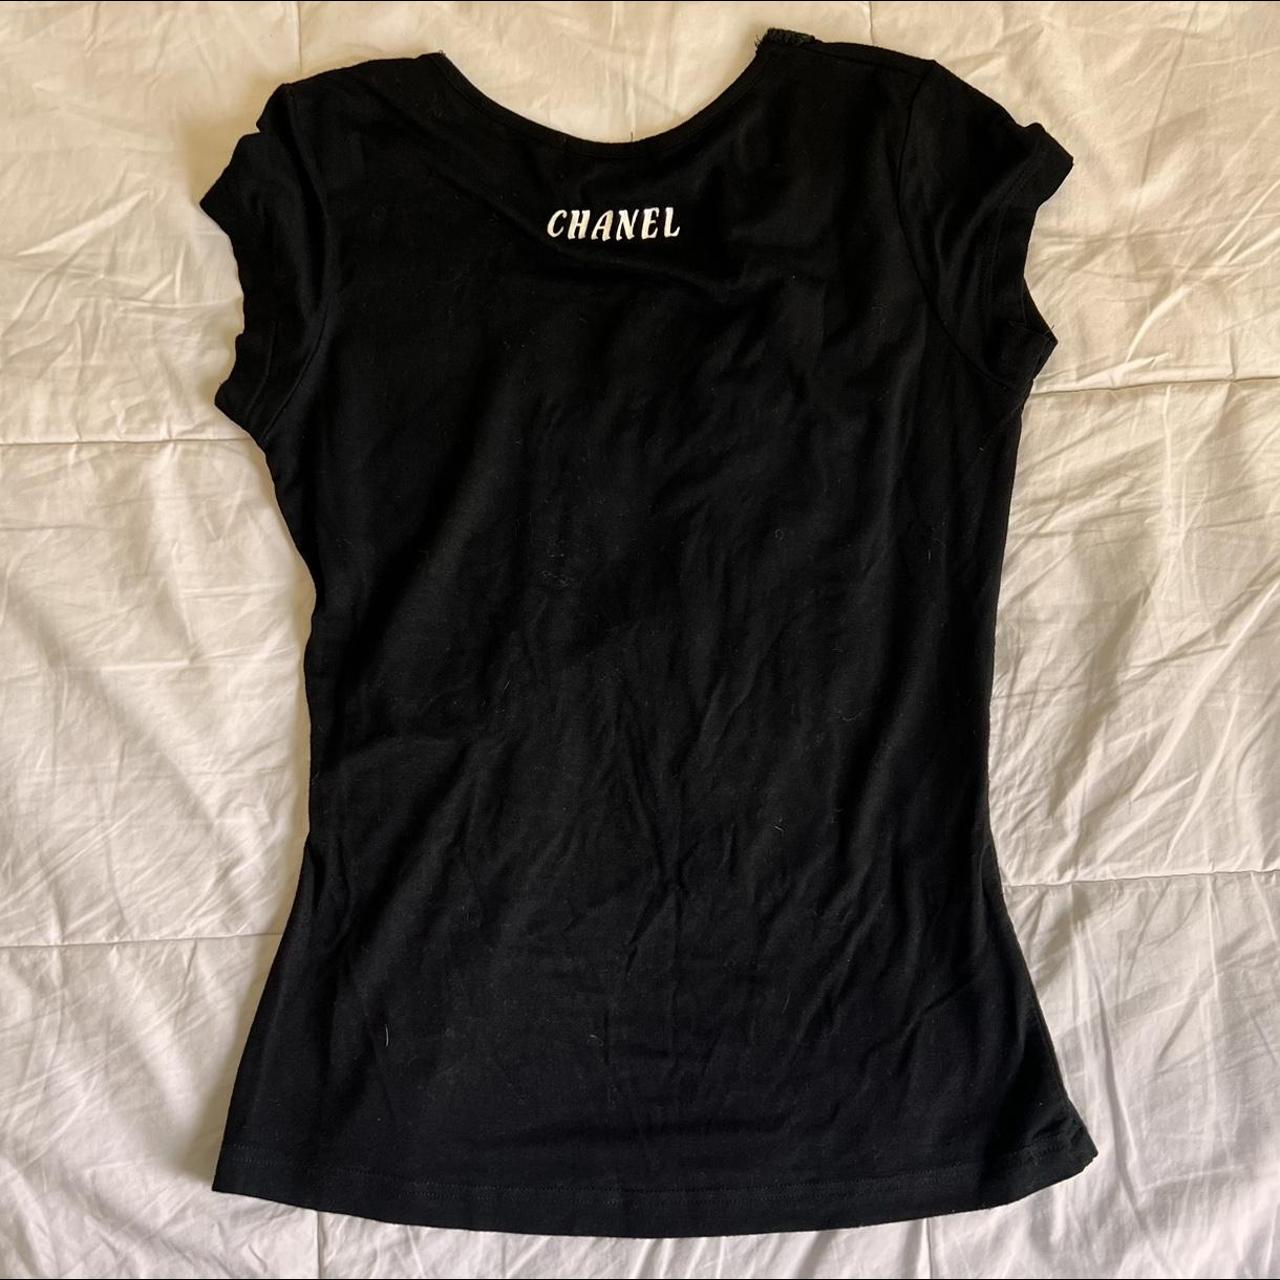 Chanel Women's T-Shirt